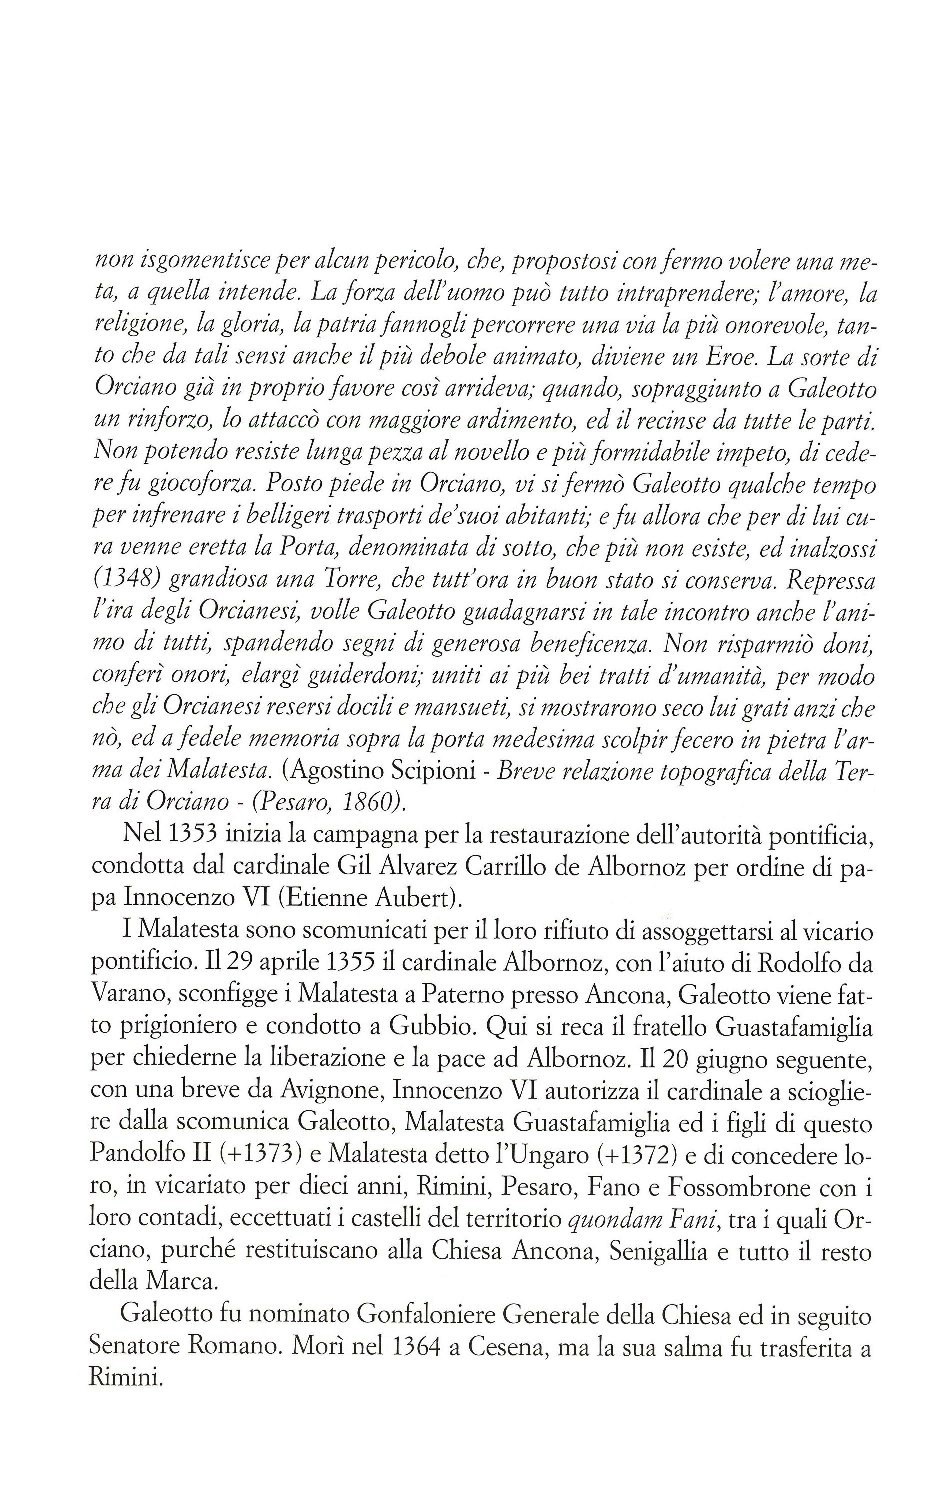 La torr i arduna tutti 2006 p.031